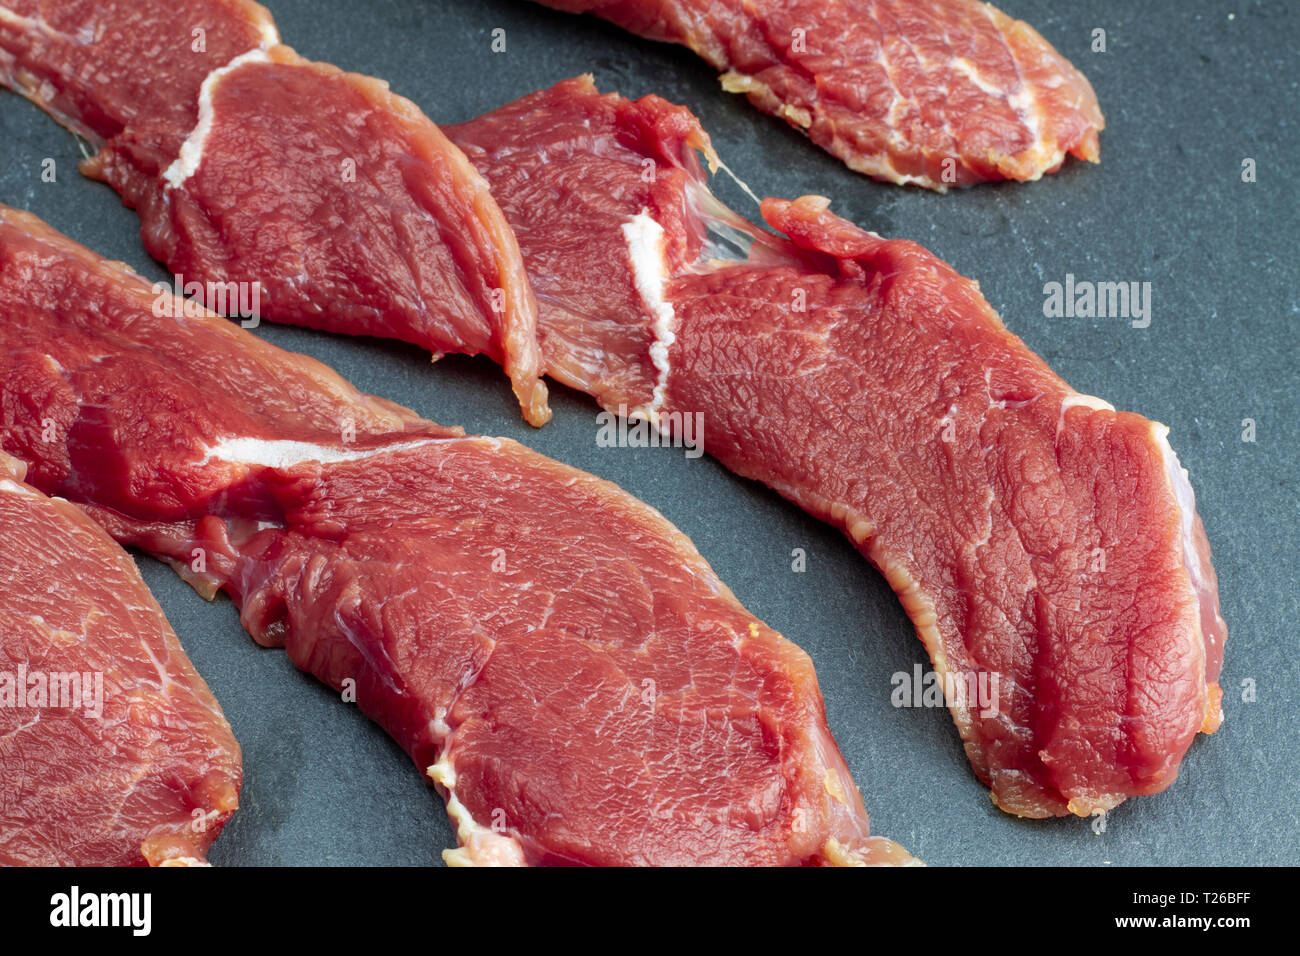 Appetitlich rot frisches Kalbfleisch, in dünne Scheiben geschnitten,  Rindersteaks auf einen schwarzen Stein Schiefer gelegt. Das Rezept für  Kochen Fleisch Steaks. High Definition phot Stockfotografie - Alamy